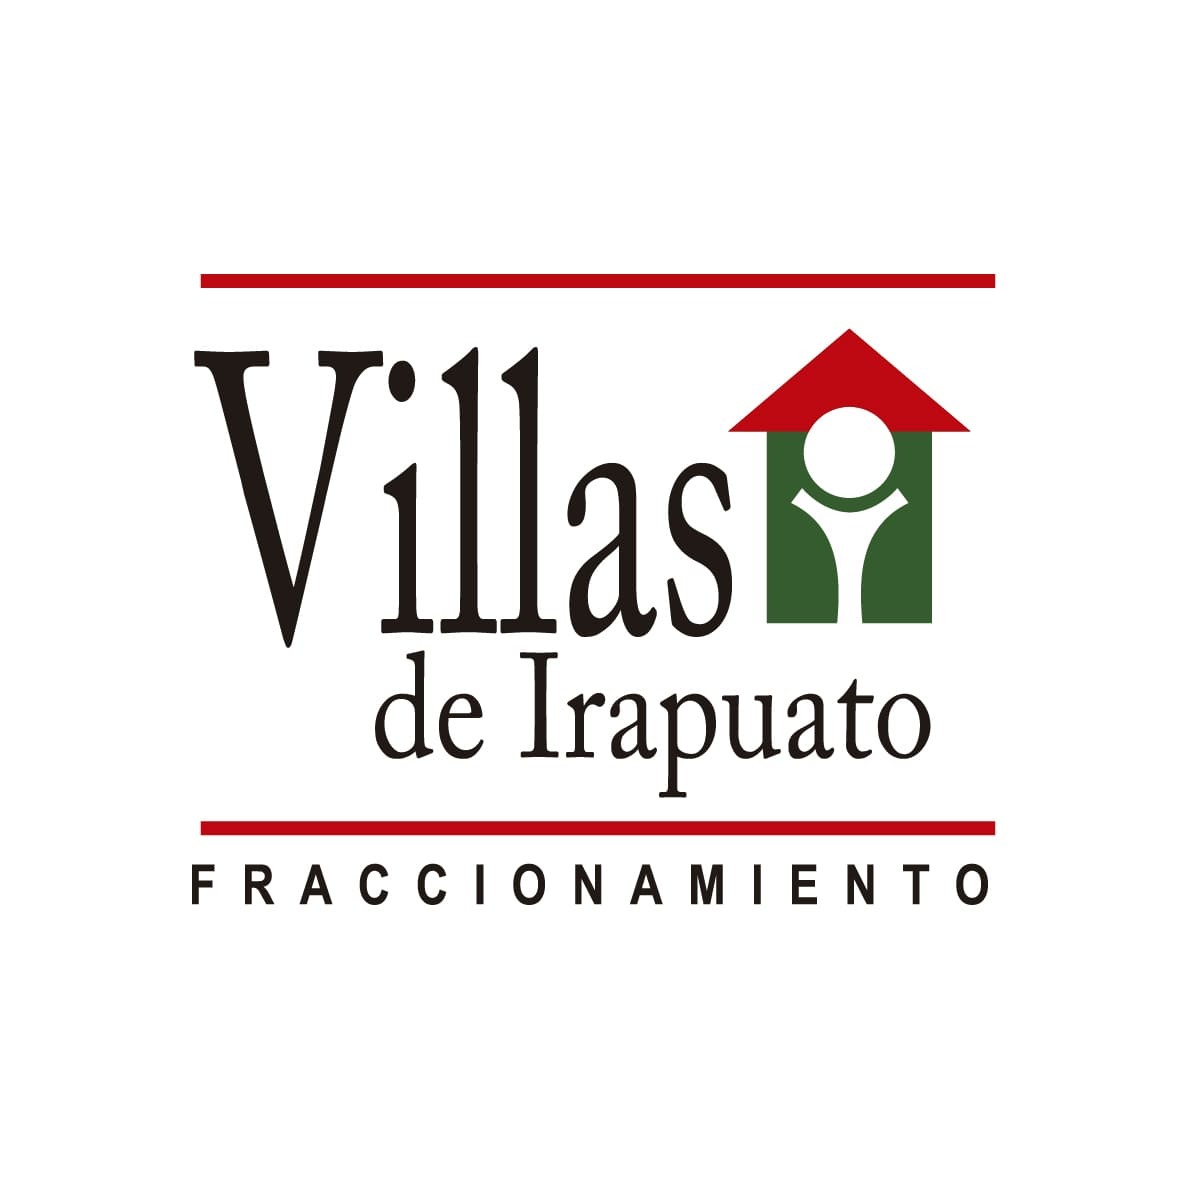 Villas de Irapuato - Villas de Irapuato el mejor lugar para vivir